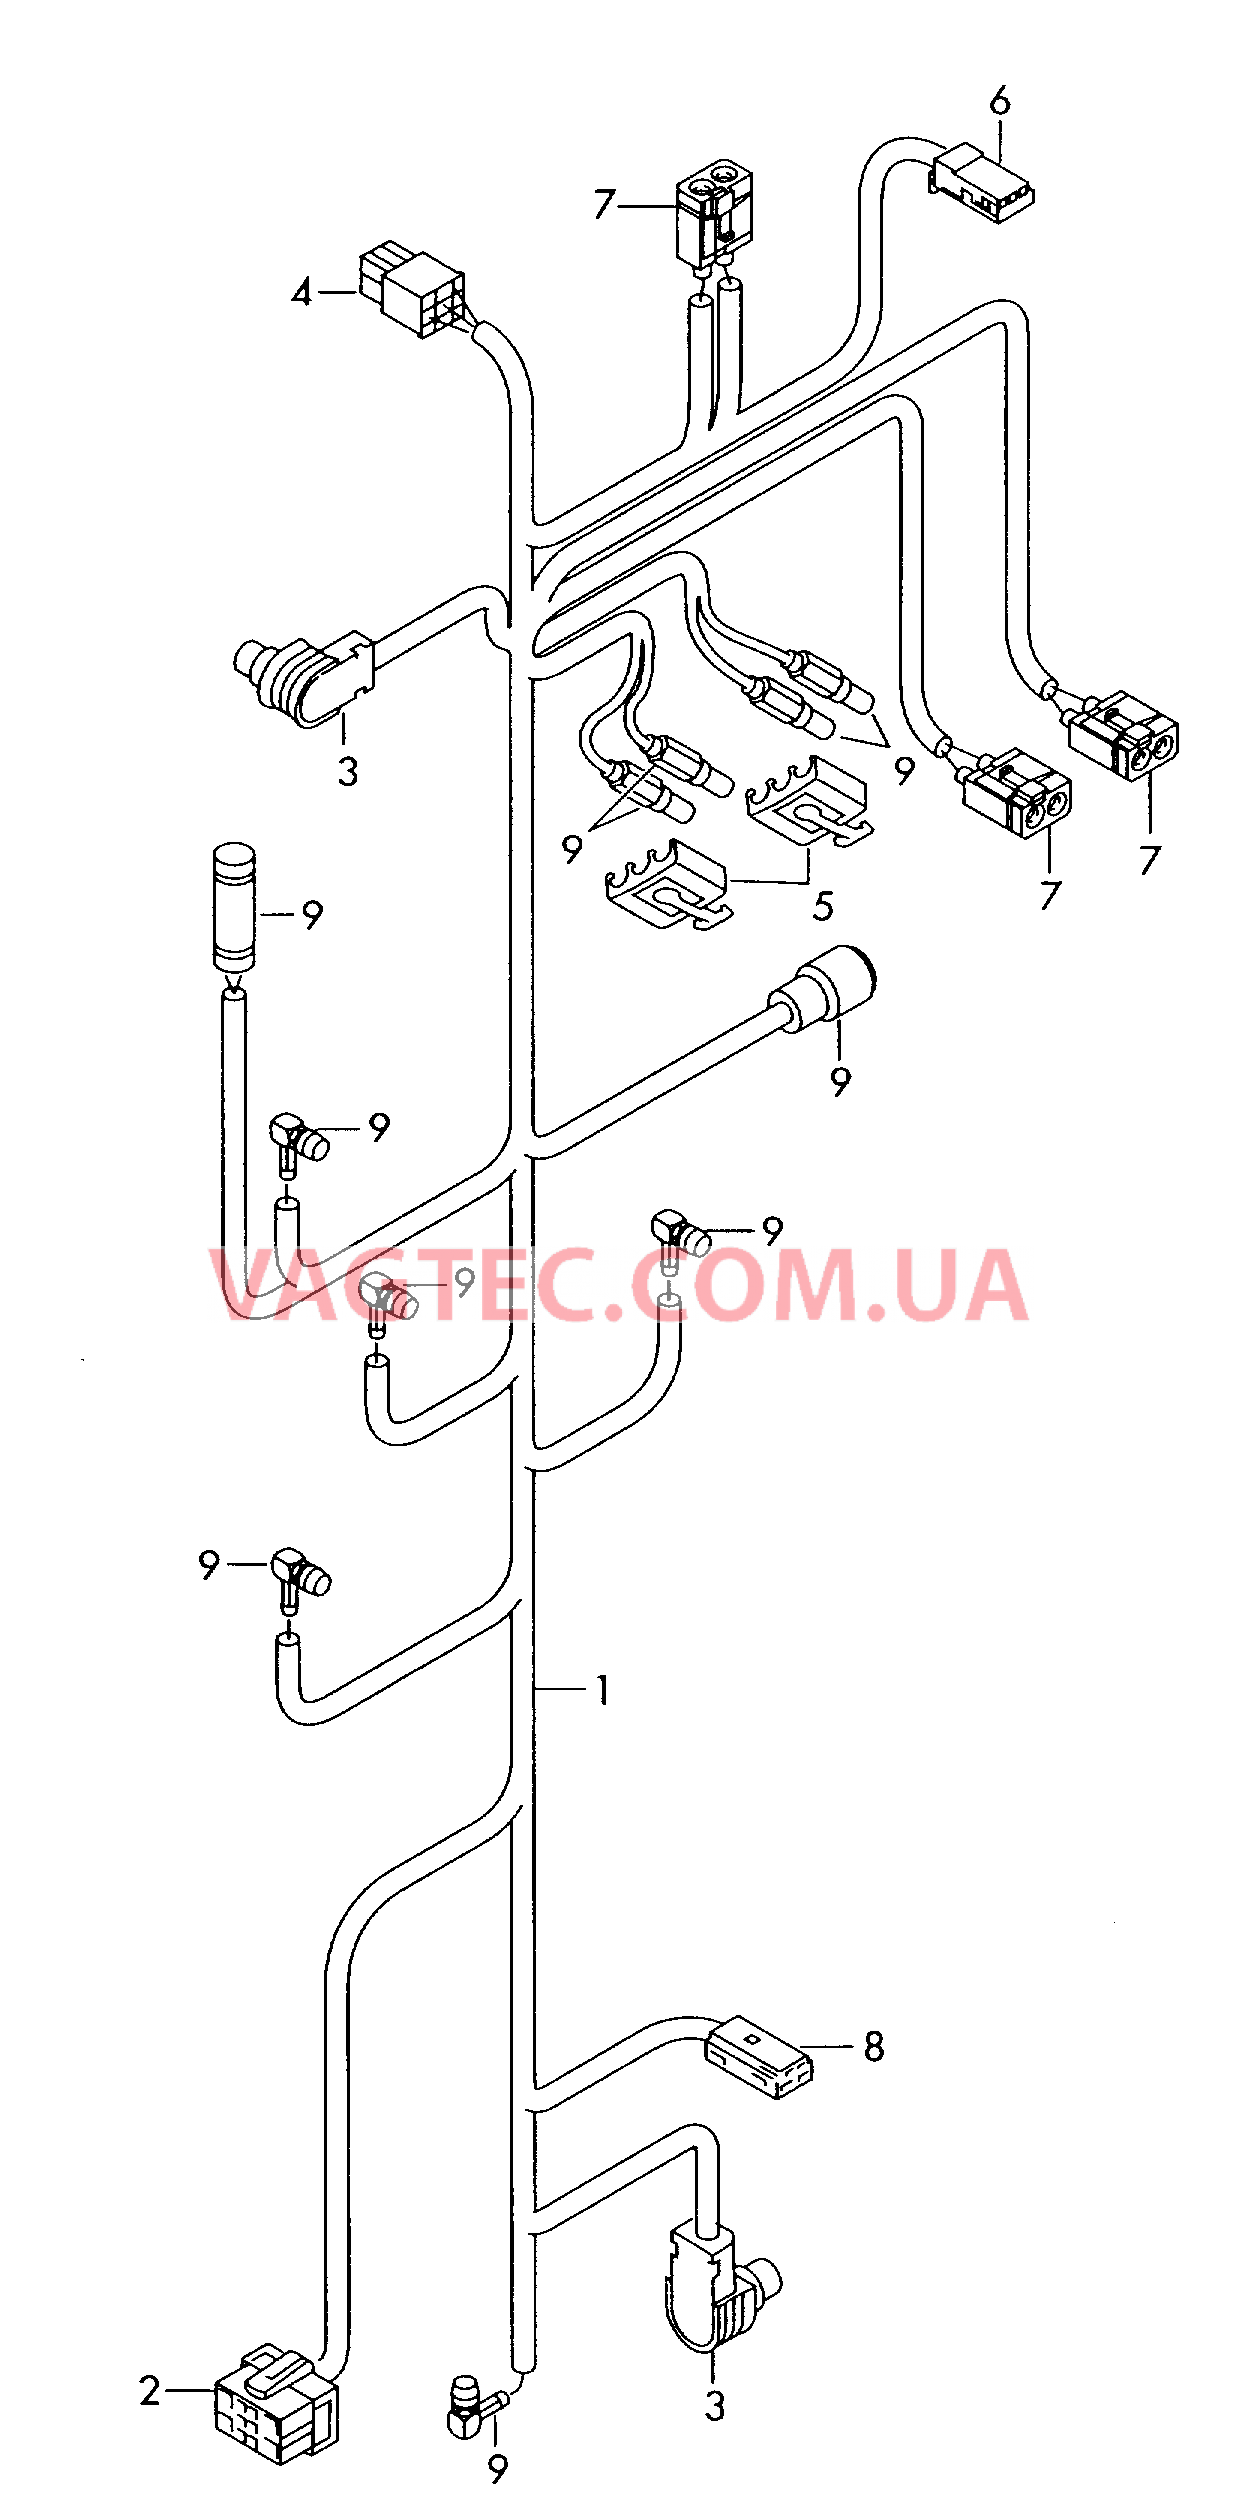 Жгут проводов для системы навигации с встроенной магнитолой  для AUDI RS4 2000